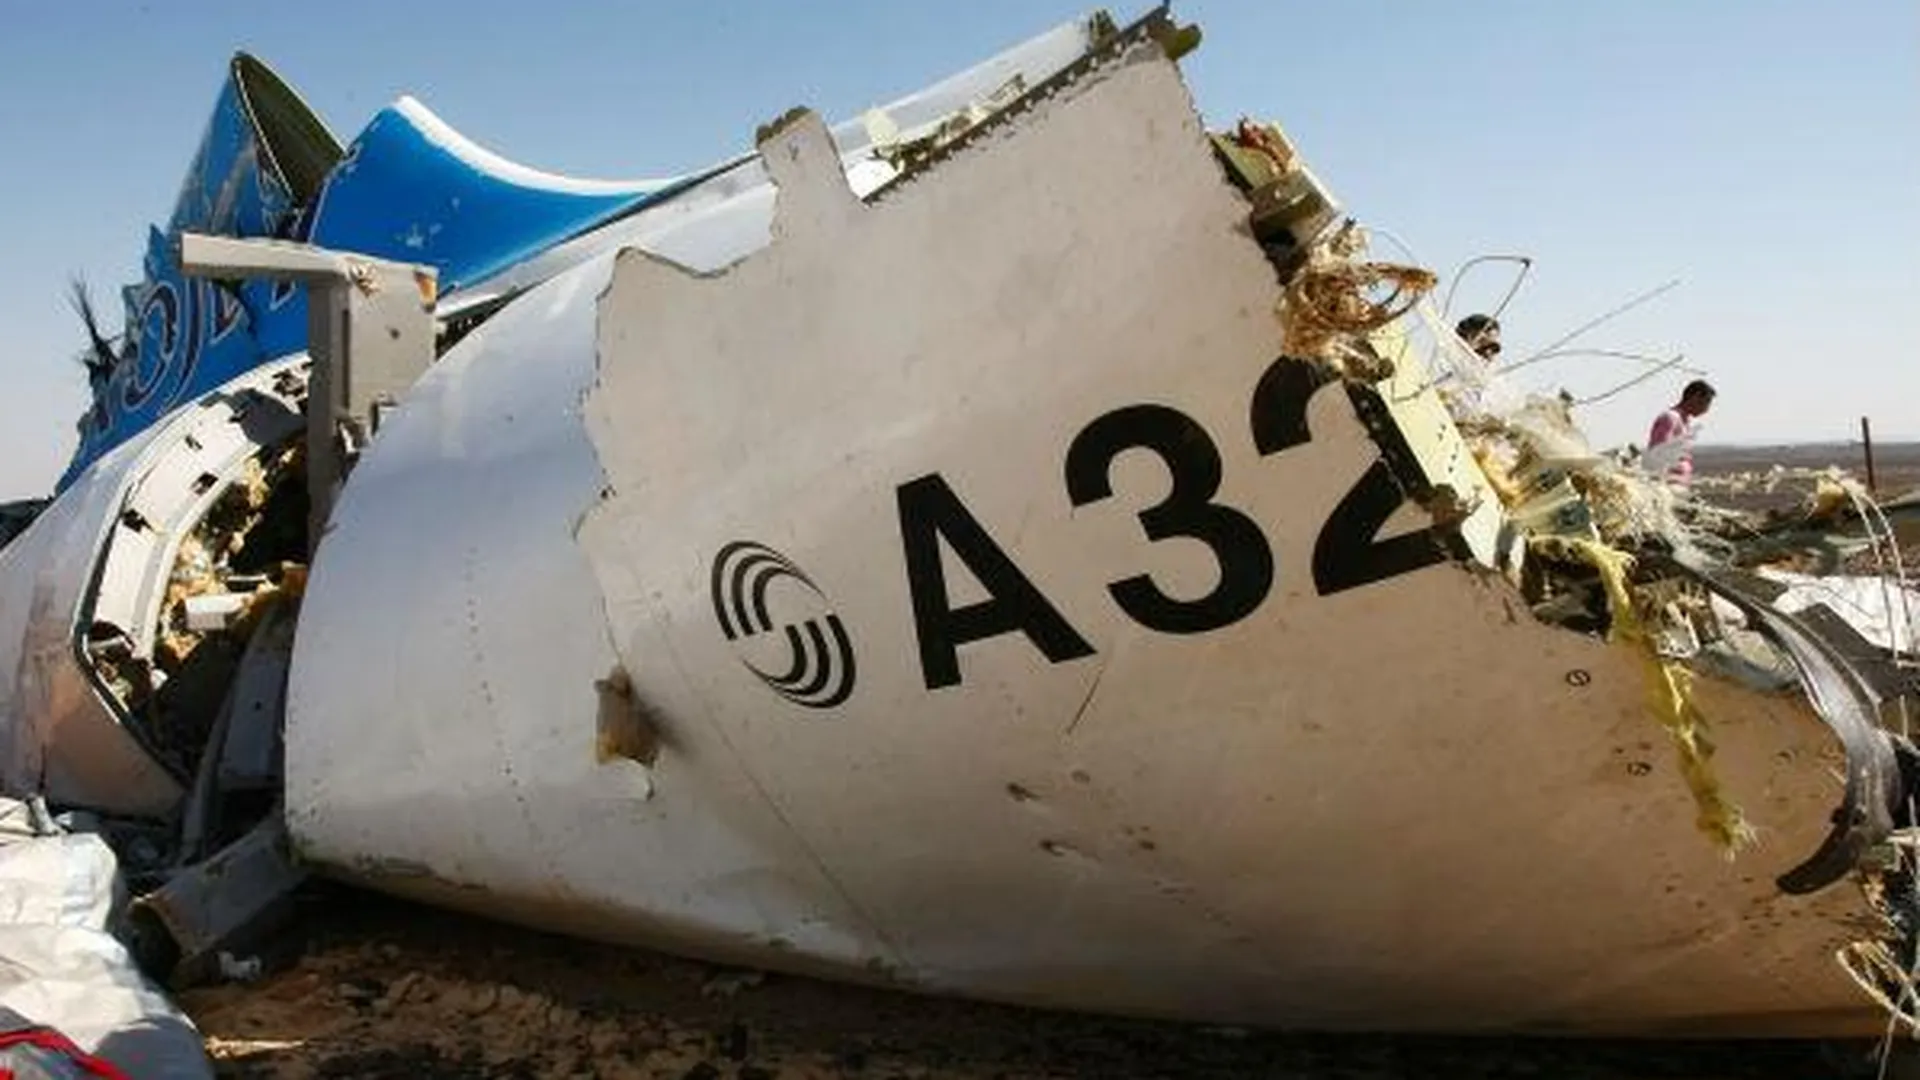 По 1 млн руб от властей МО получат семьи членов экипажа самолета, разбившегося в Египте